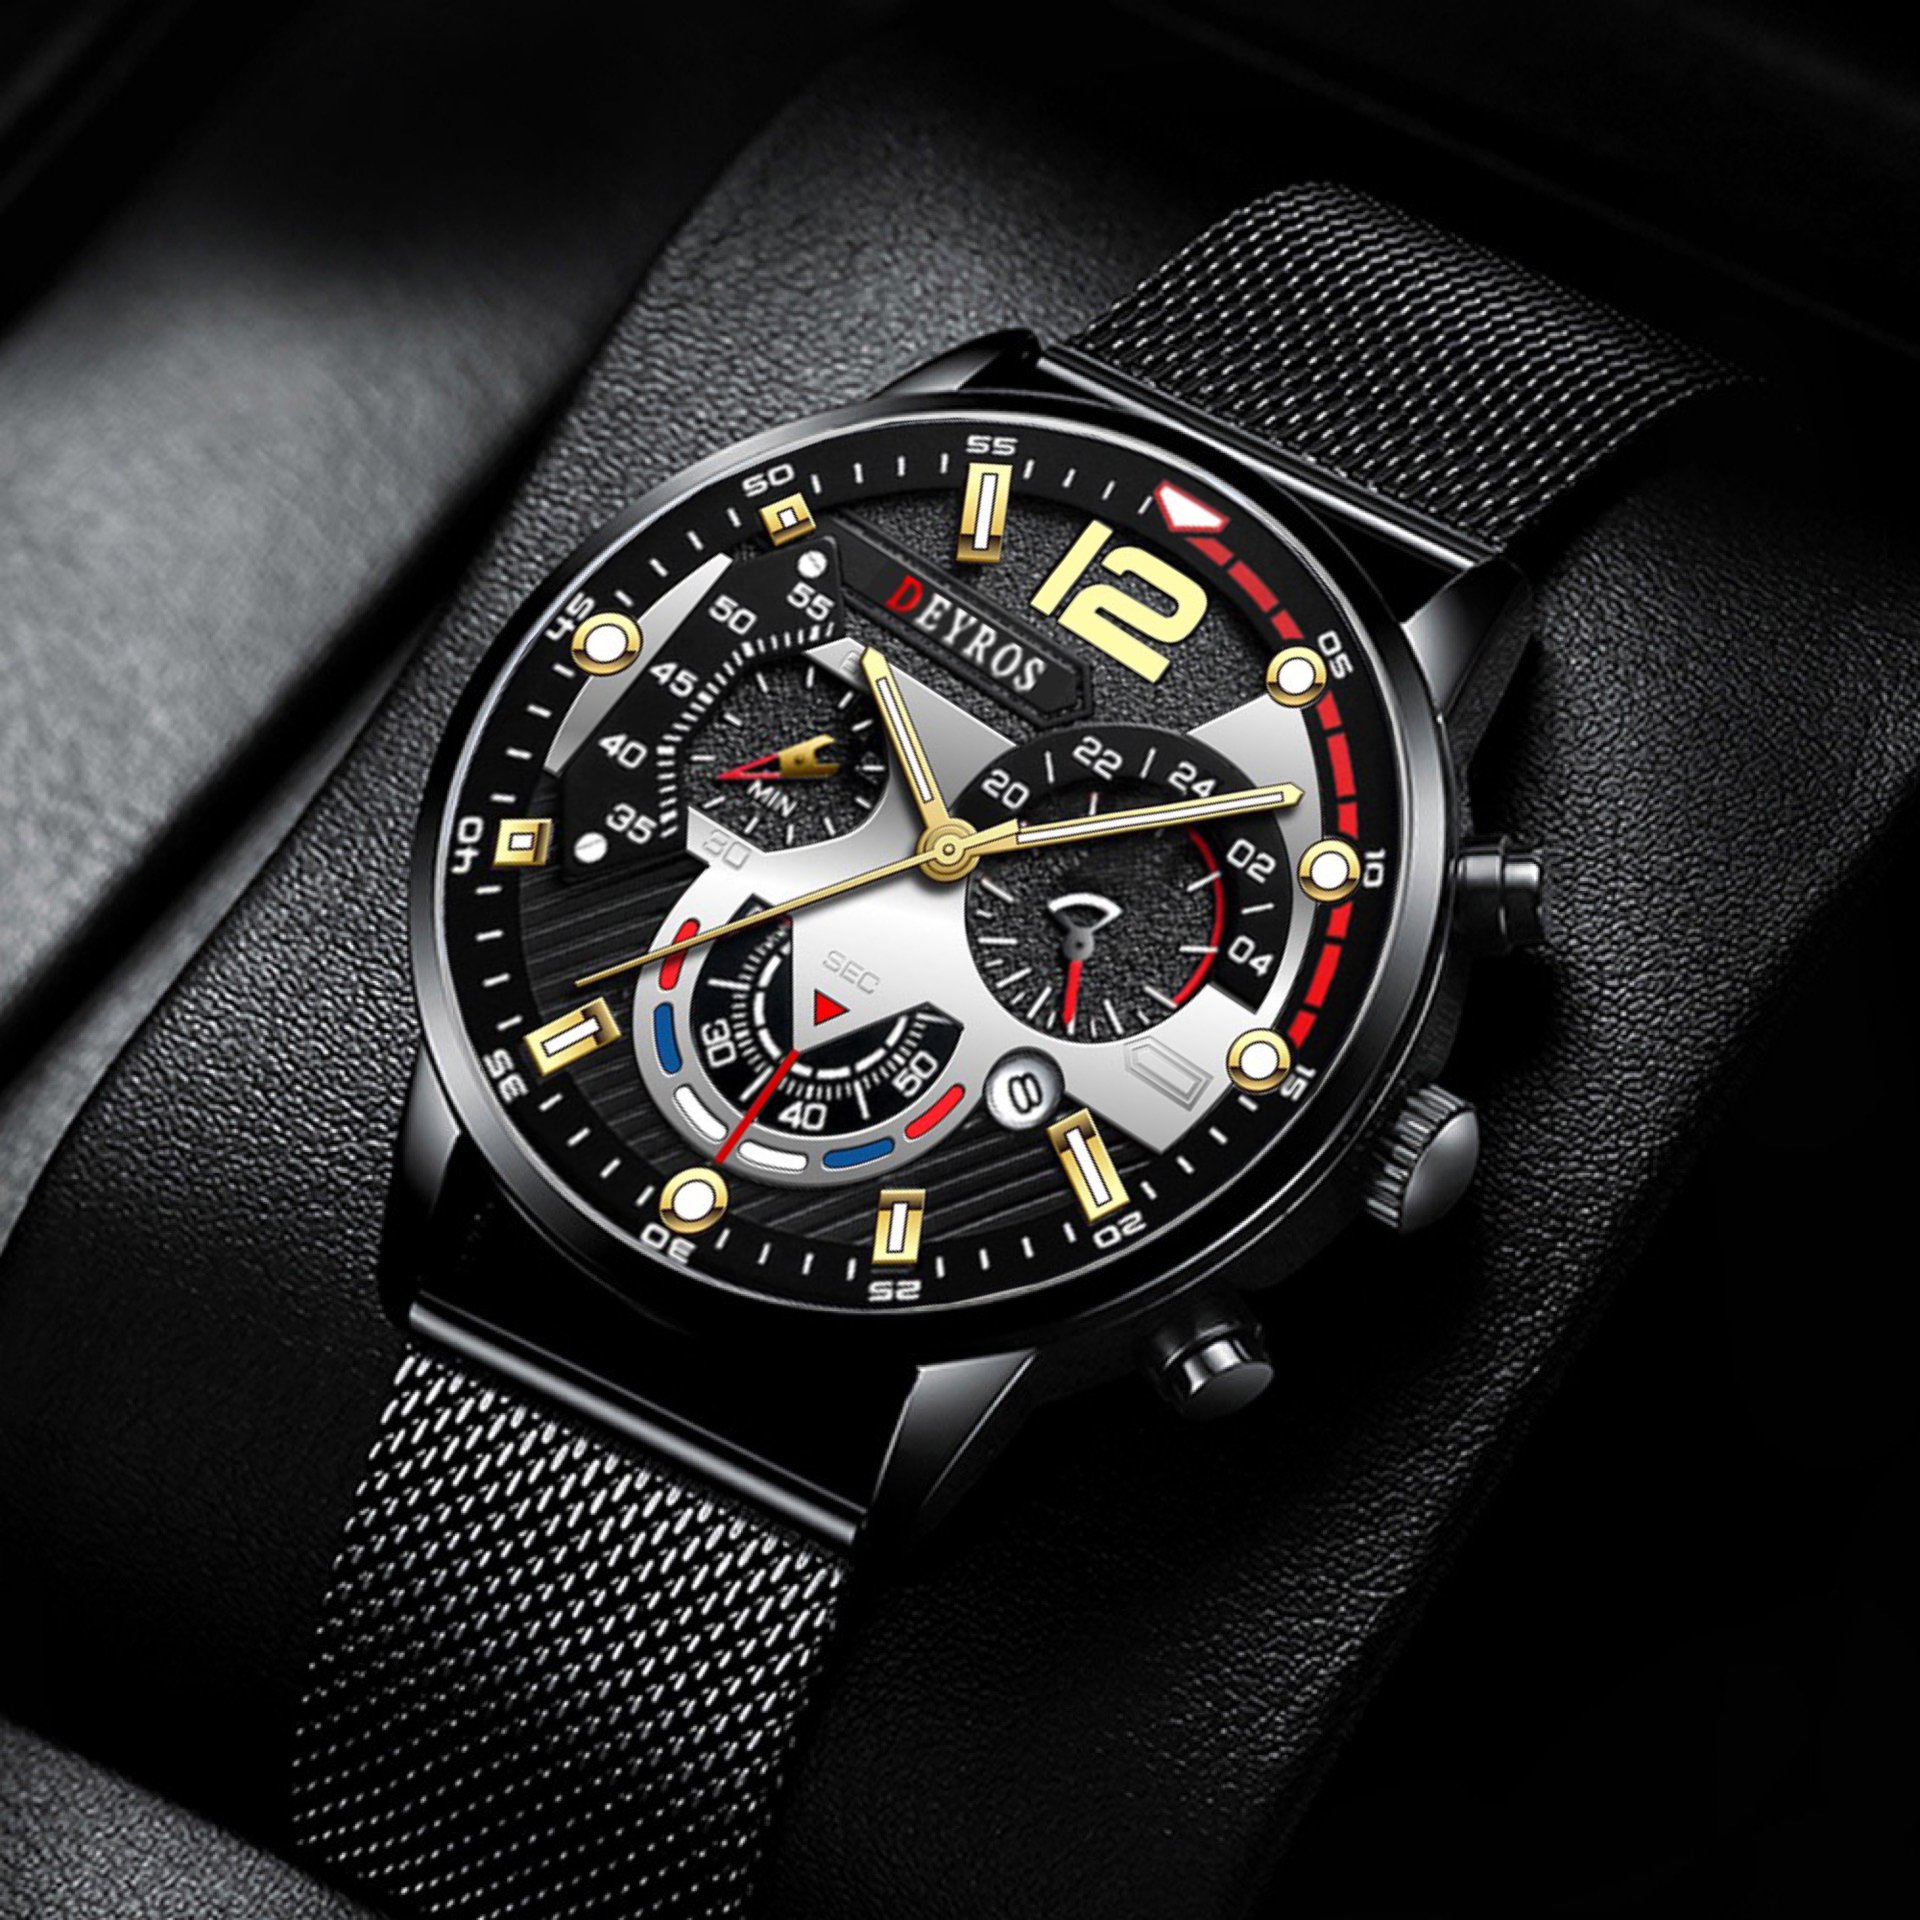 Đồng hồ nam cao cấp DEYROS dây thép mành đen chạy lịch ngày - Thiết kế thể thao và nam tính MS559